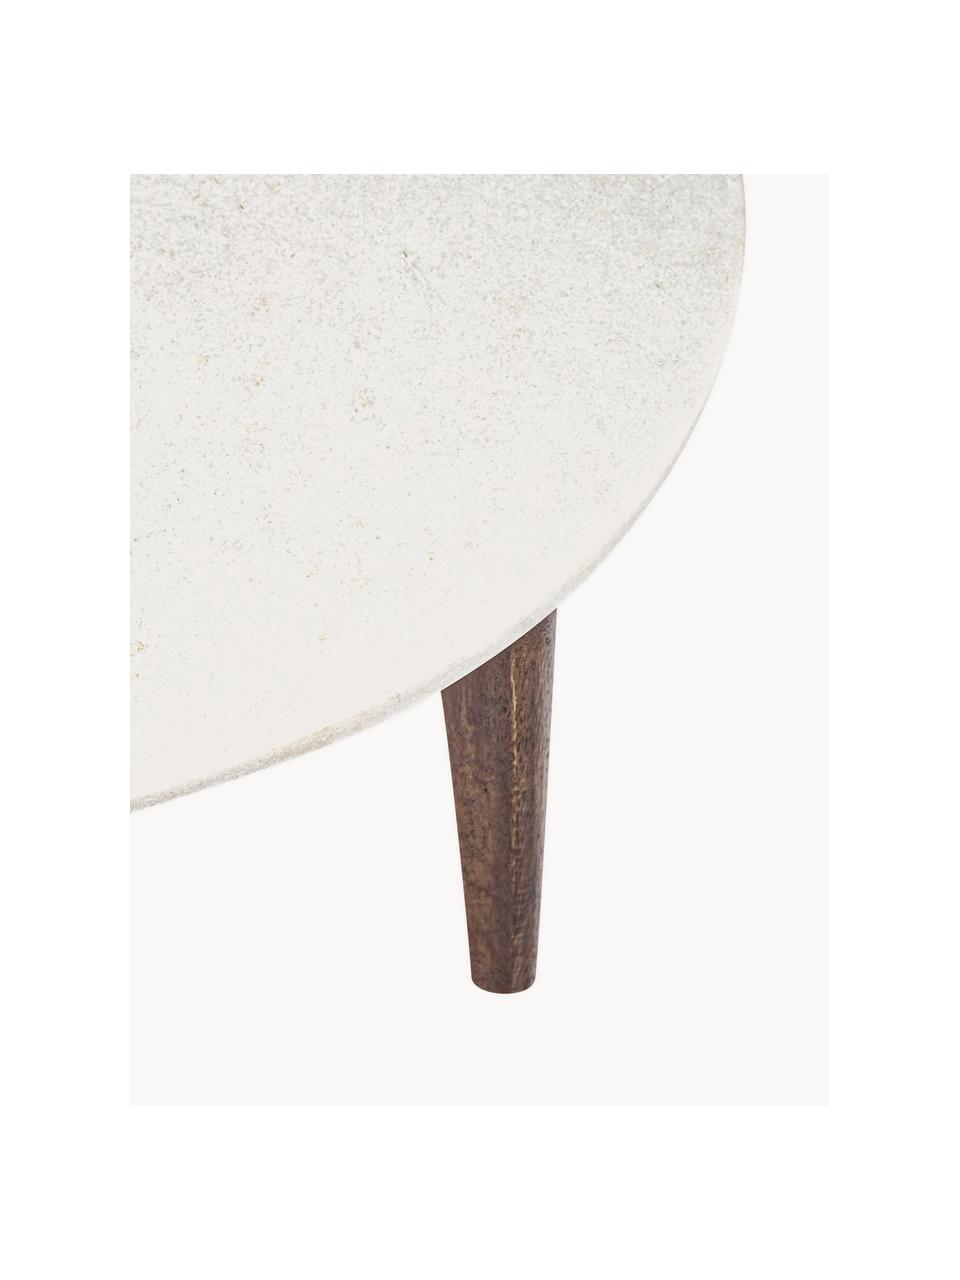 Runder Couchtisch Sylvester mit Marmorplatte, Tischplatte: Marmor, Beine: Mangoholz, Weiß marmoriert, Mangoholz, Ø 75 cm